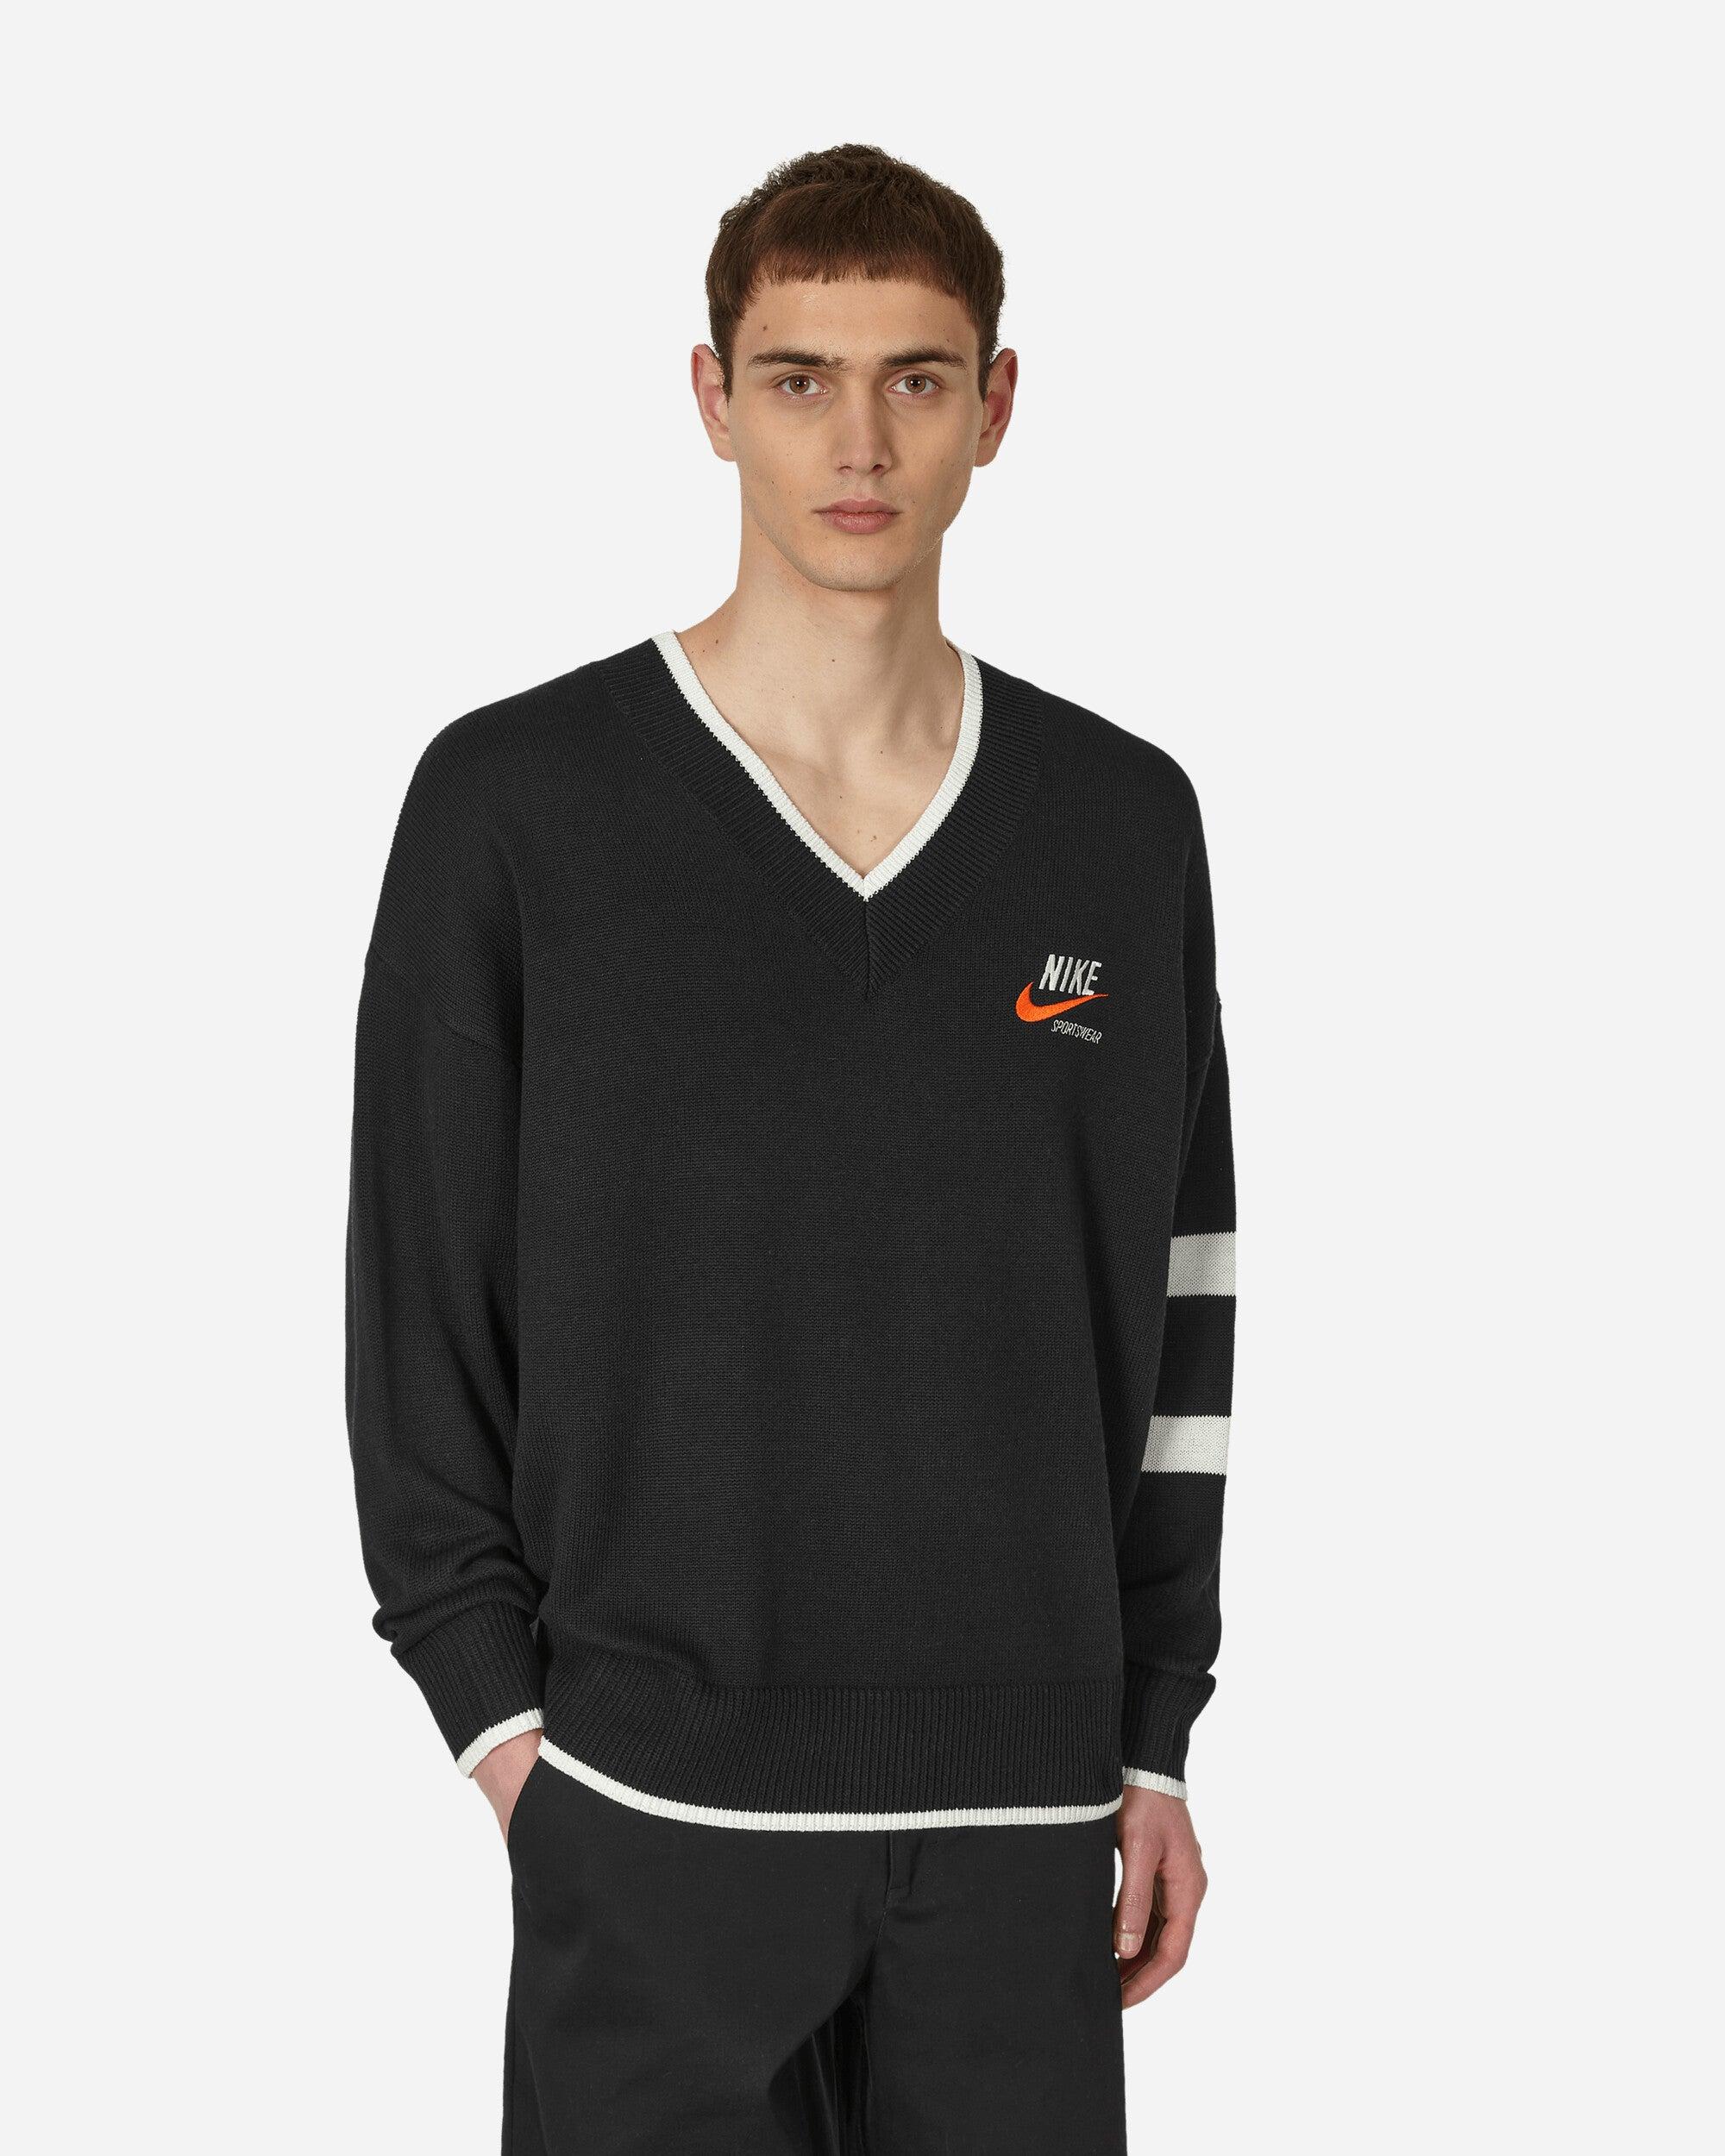 Nike Trend V-neck Sweater Black for Men | Lyst